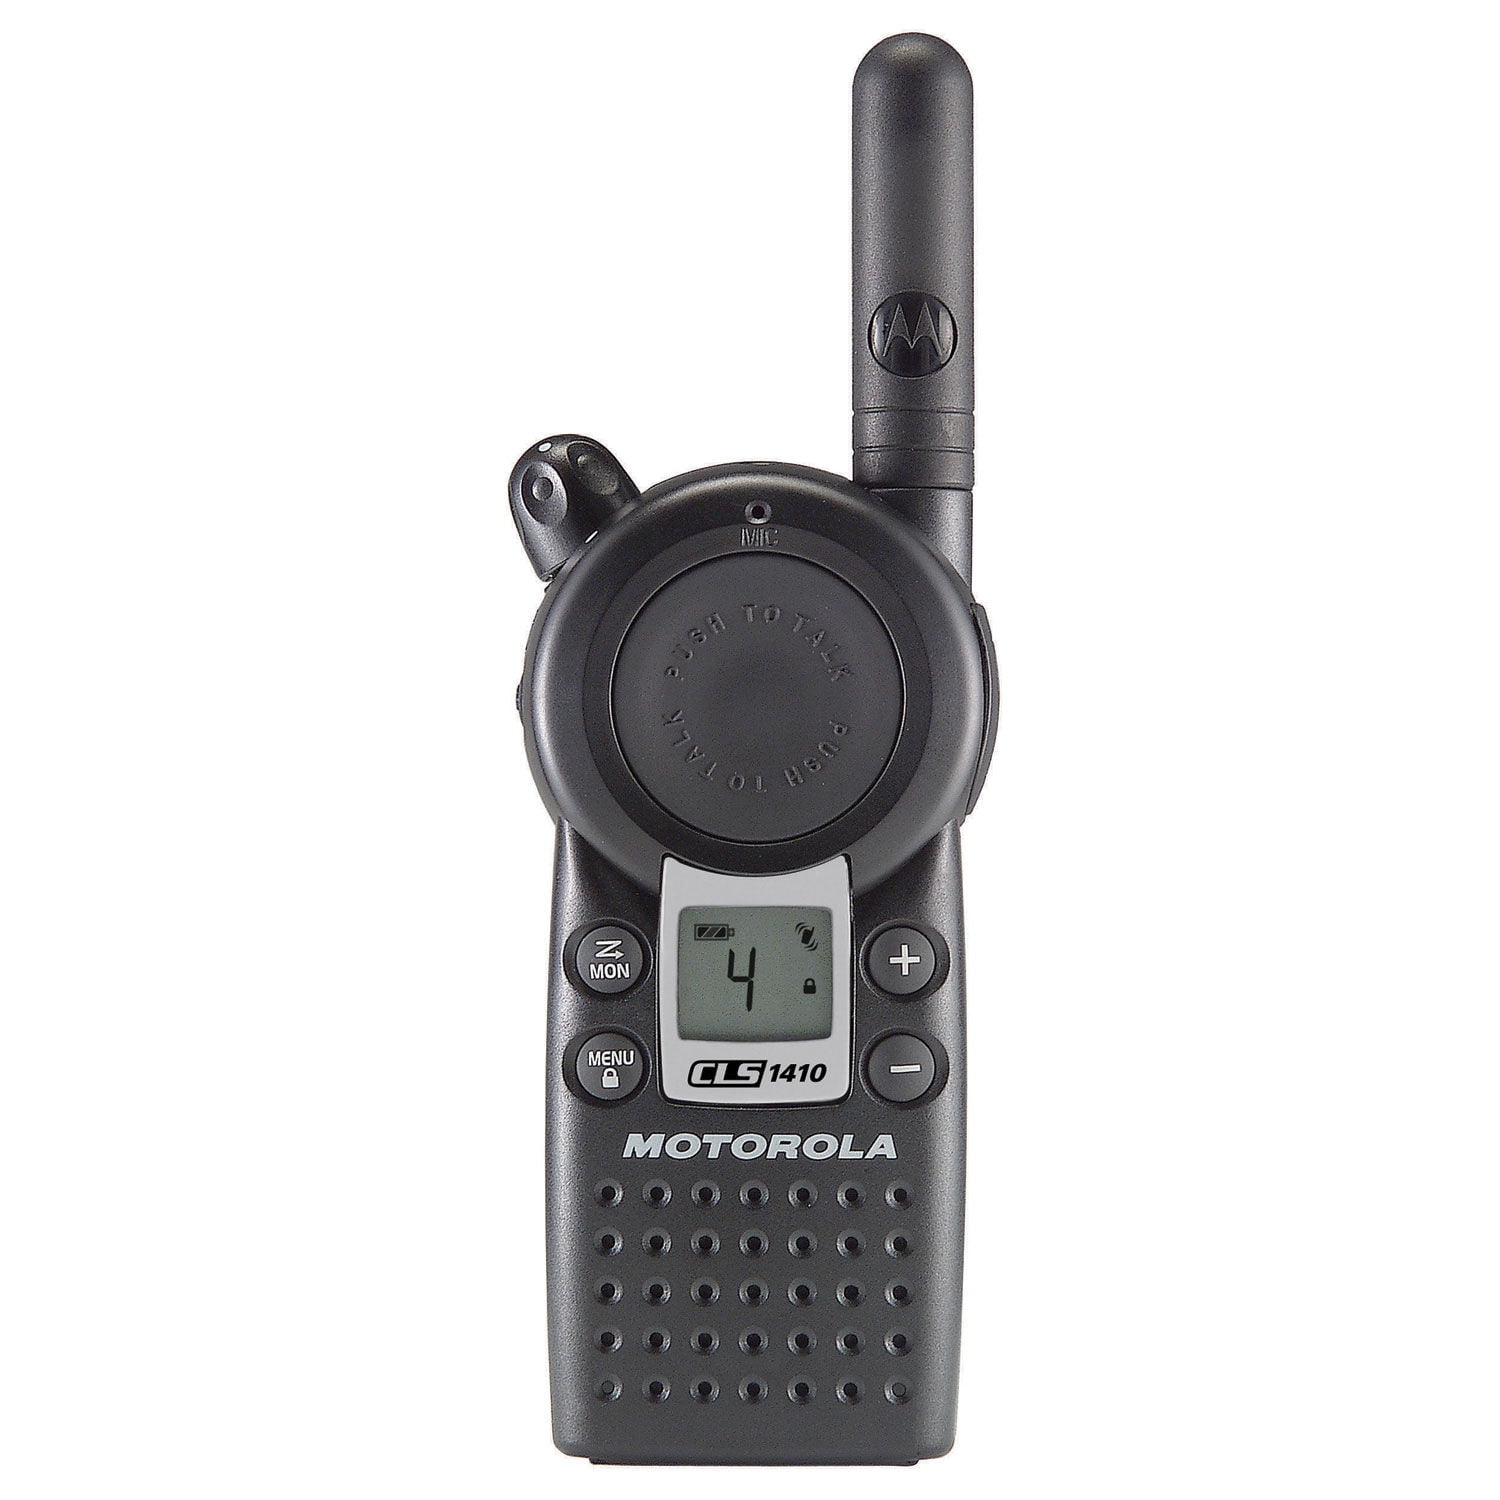 Motorola CLS1410 2-Way Radio Mile Range